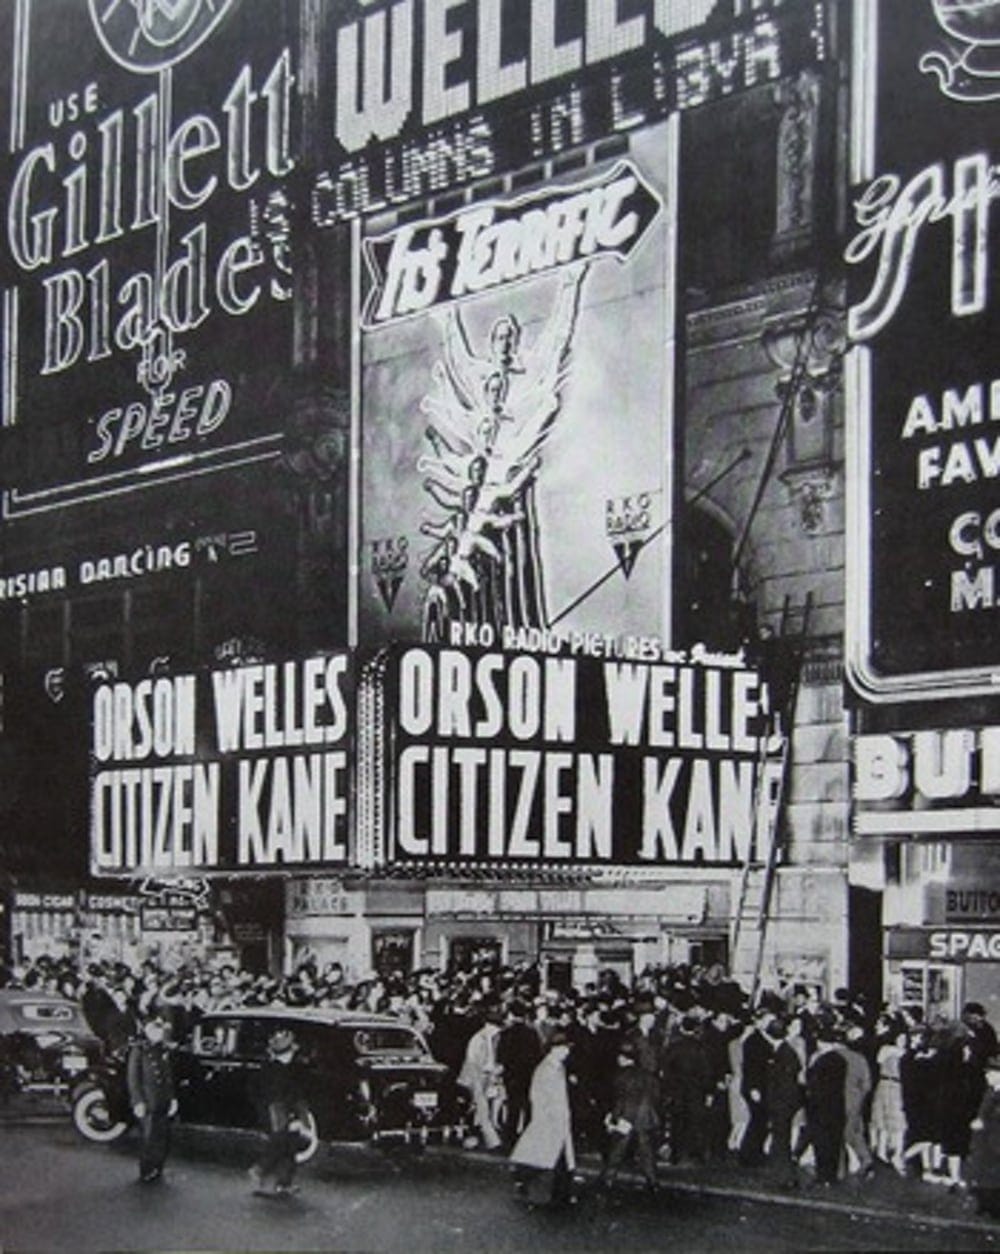 Orson Welles: “Citizen Kane” premiere